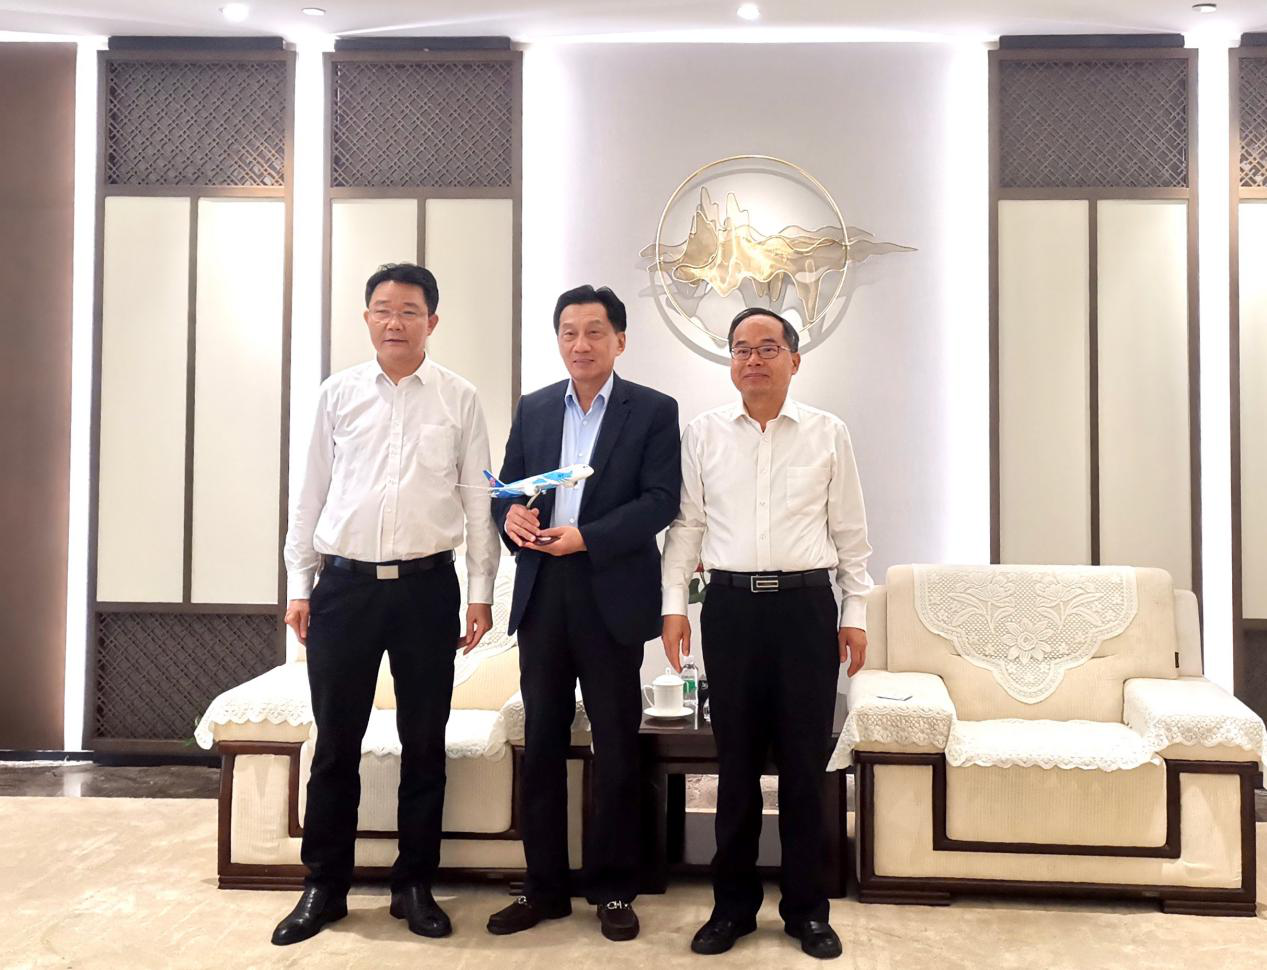 广州市花都区、广州空港委与中国电子商会举行战略合作协议签约